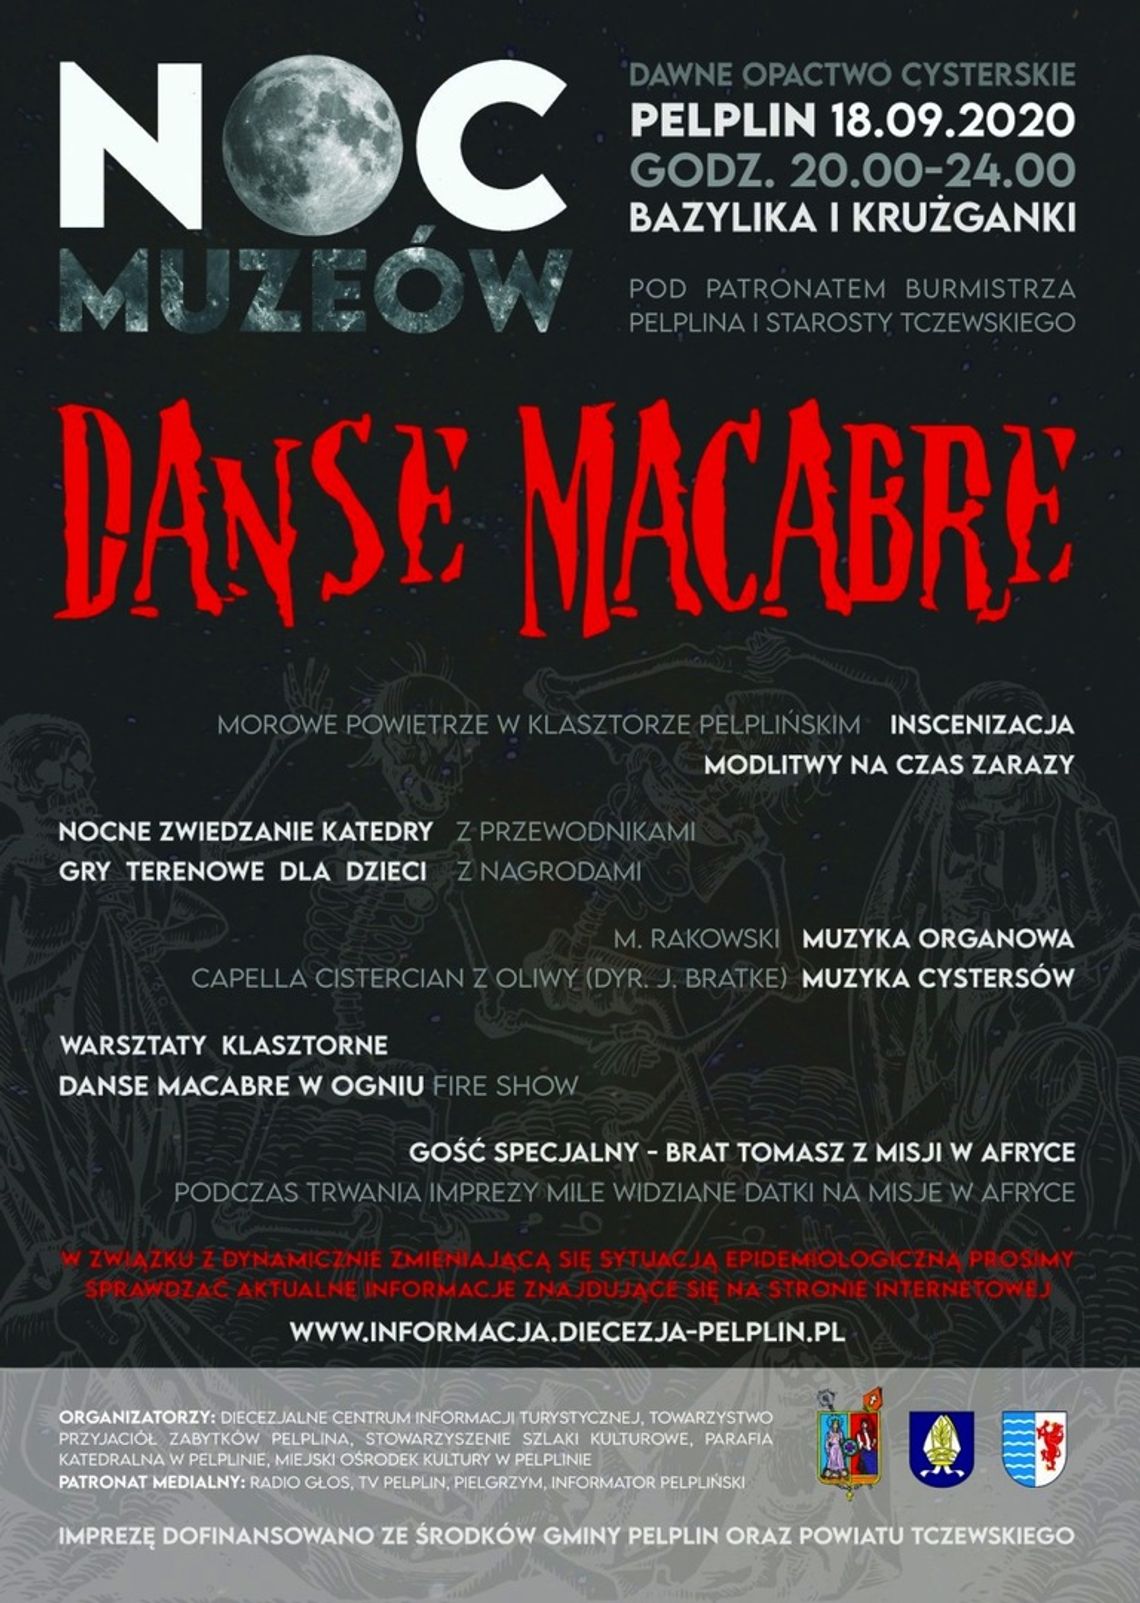 Danse Macabre - zaproszenie na Noc Muzeów w dawnym opactwie cysterskim